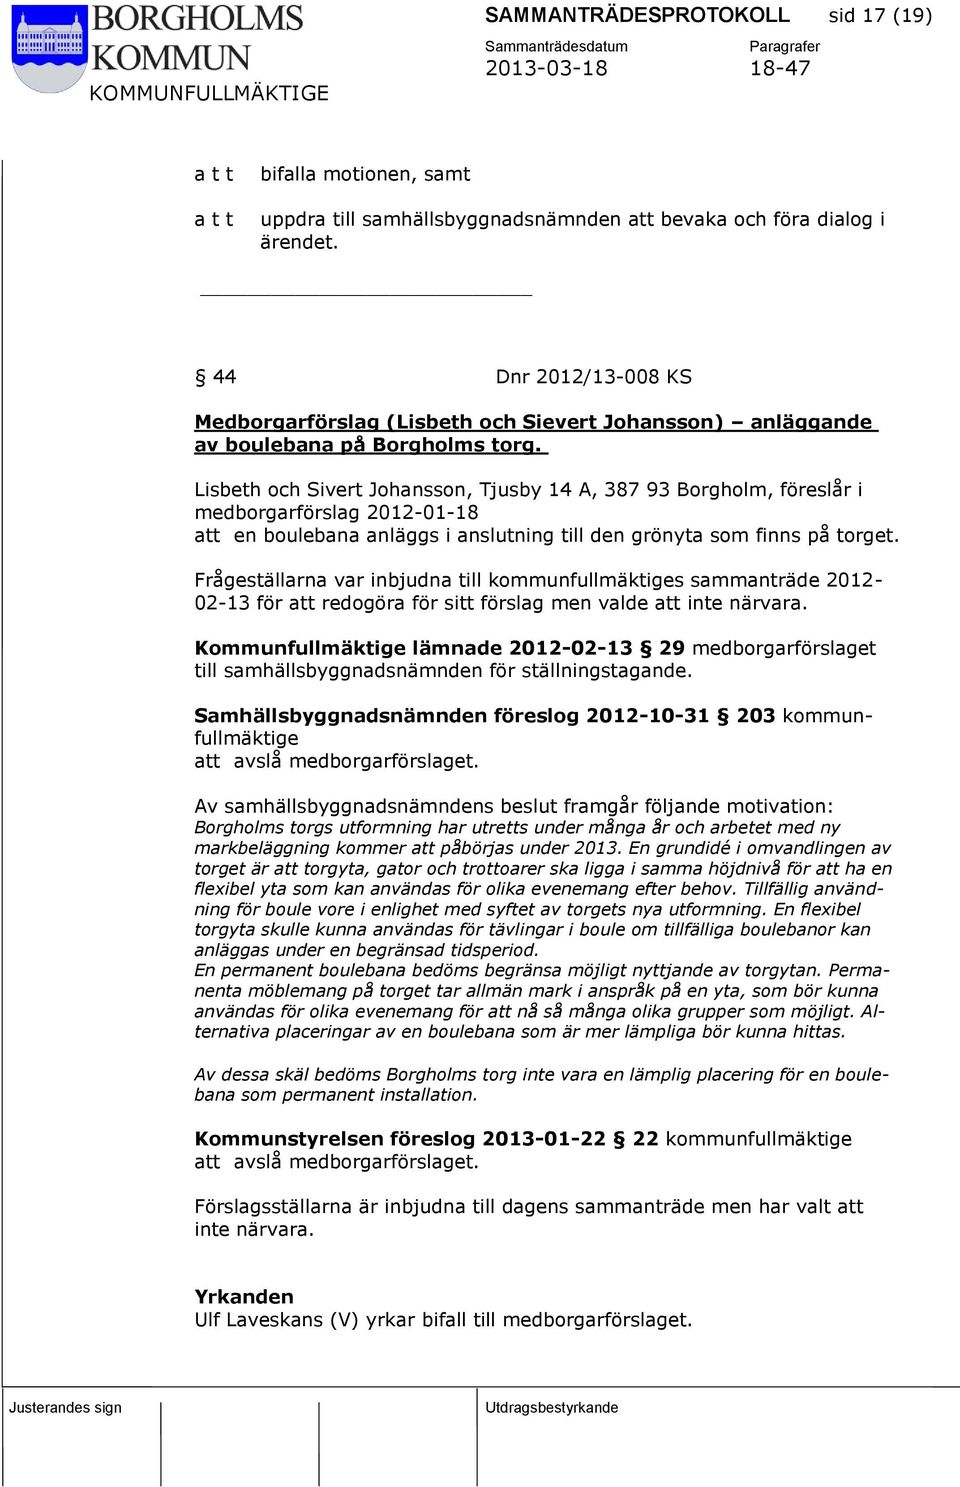 Lisbeth och Sivert Johansson, Tjusby 14 A, 387 93 Borgholm, föreslår i medborgarförslag 2012-01-18 att en boulebana anläggs i anslutning till den grönyta som finns på torget.